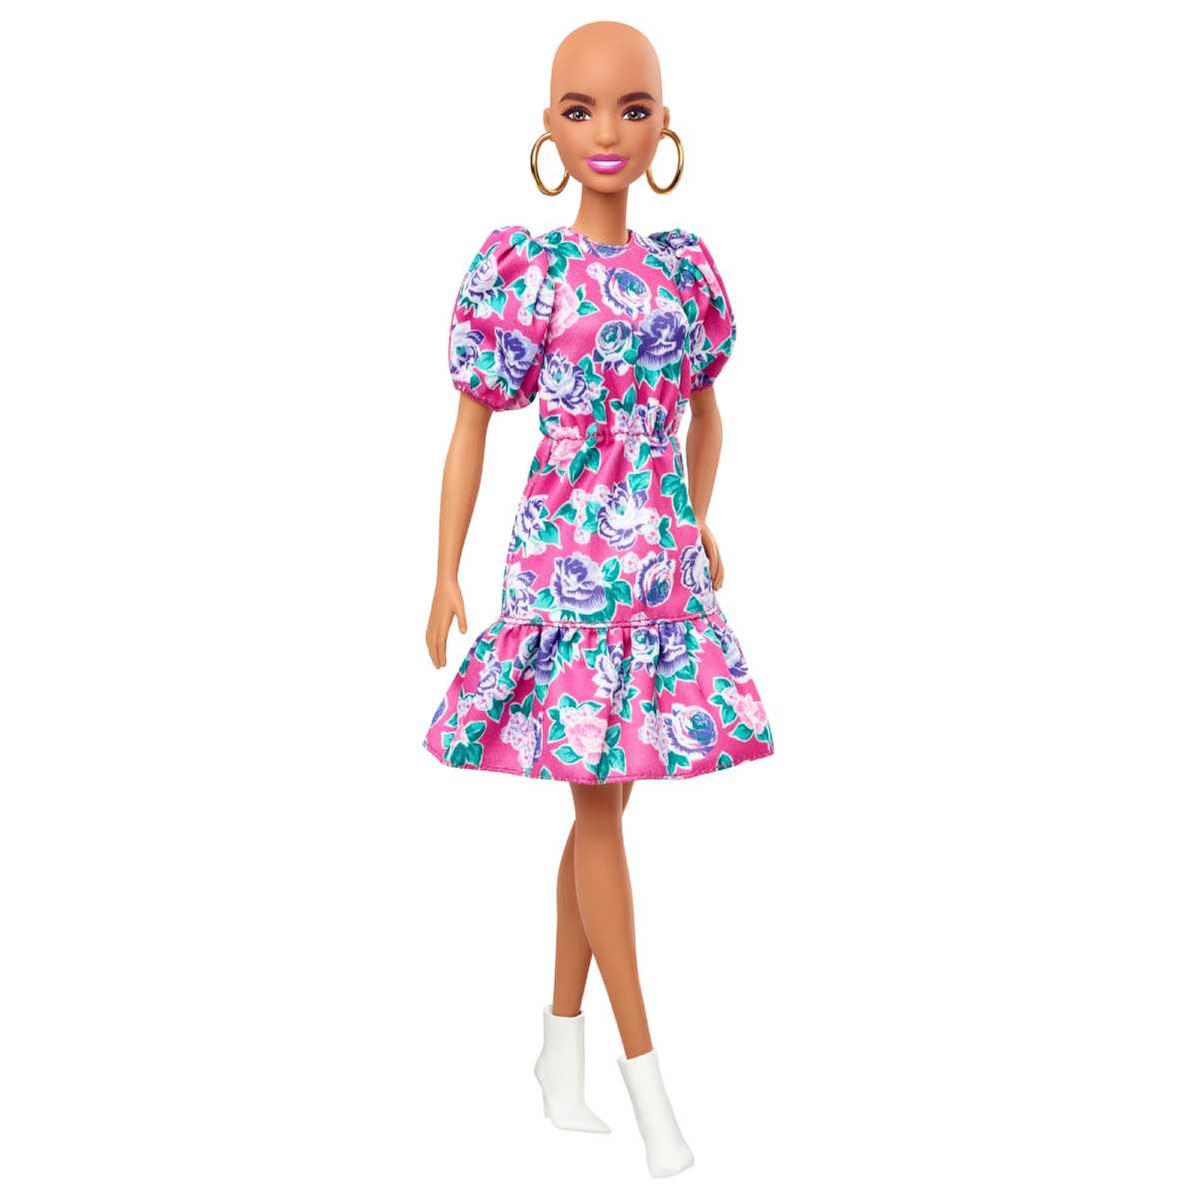 Roupa para barbie (vestido com óculos e sapato)